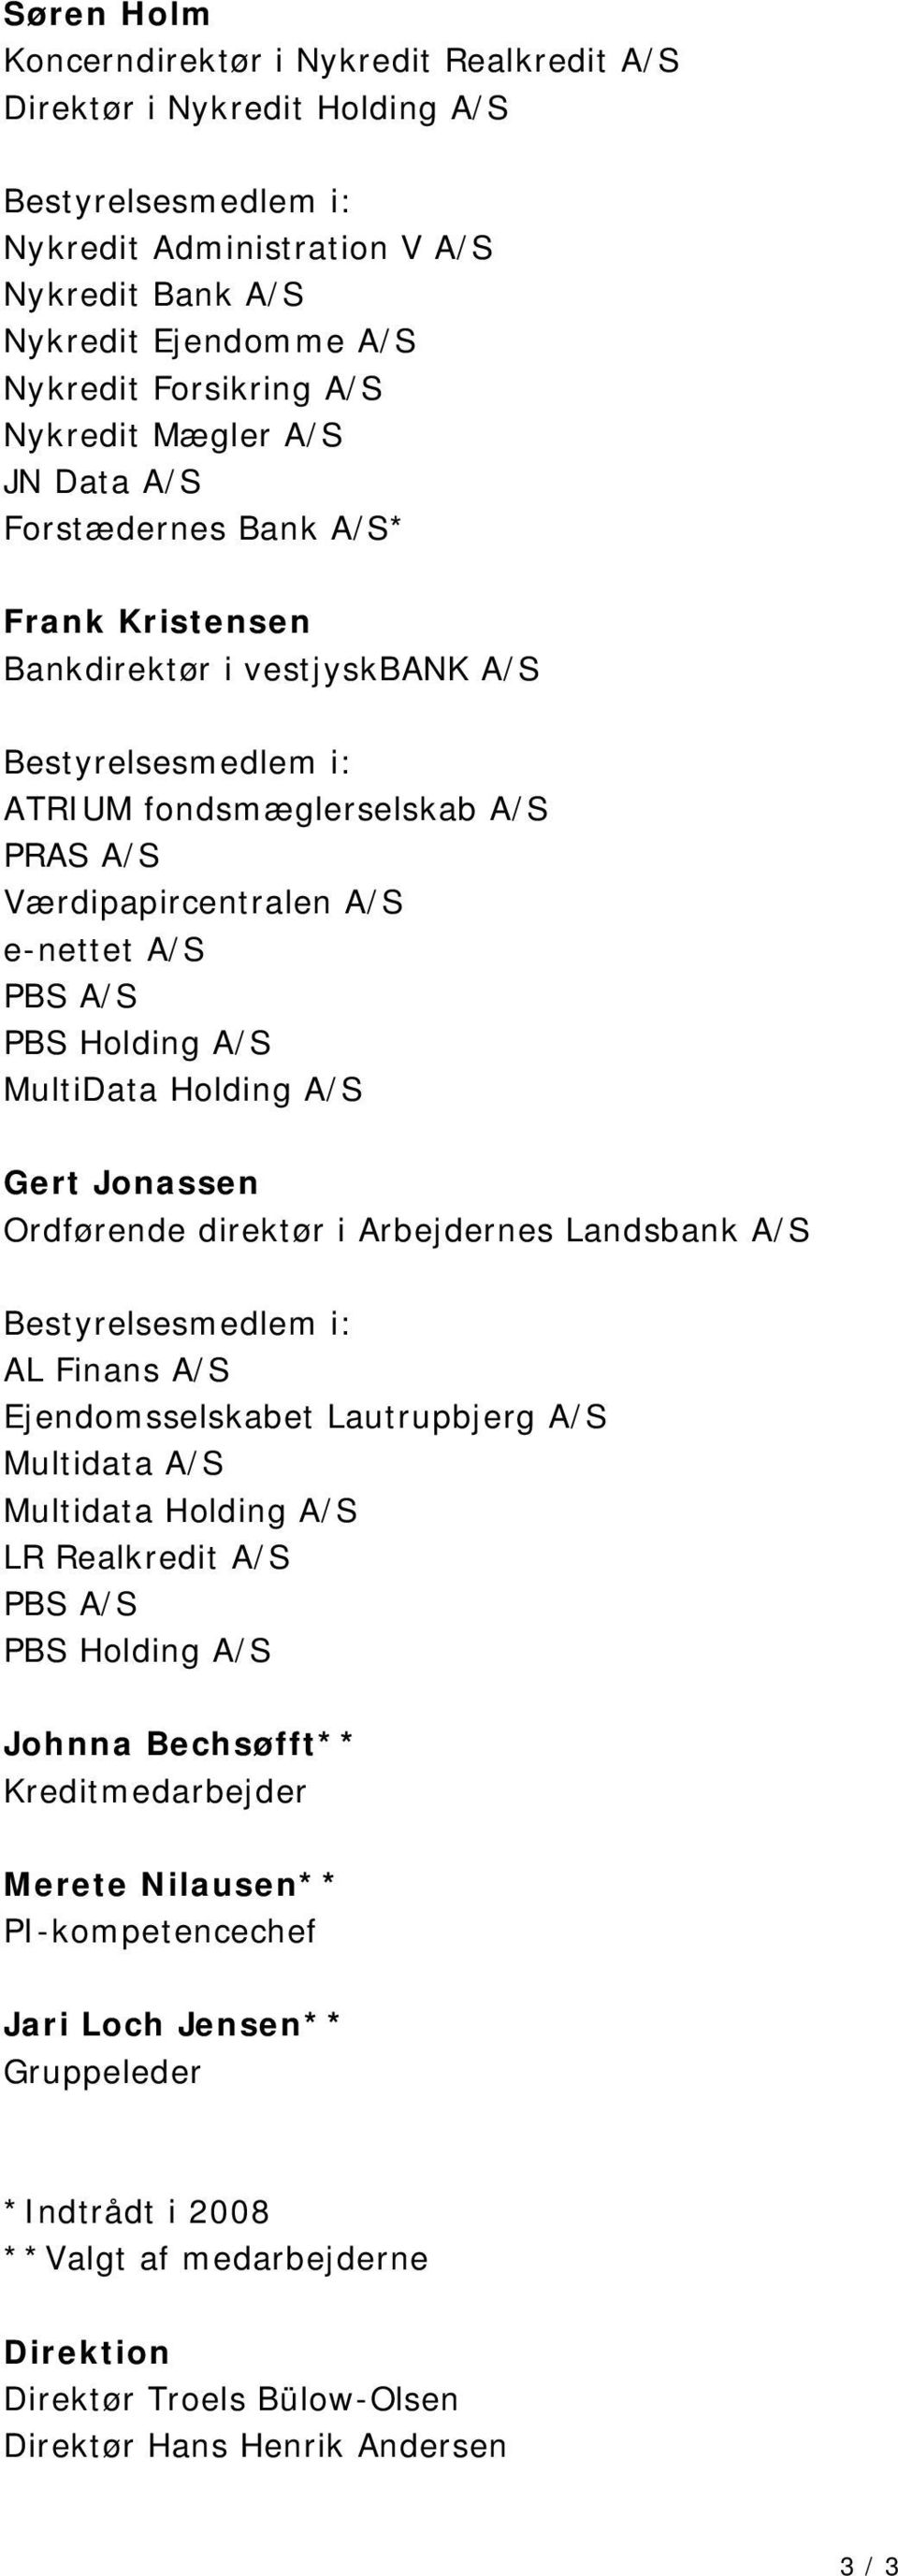 Holding A/S Gert Jonassen Ordførende direktør i Arbejdernes Landsbank A/S AL Finans A/S Ejendomsselskabet Lautrupbjerg A/S Multidata A/S Multidata Holding A/S LR Realkredit A/S PBS A/S PBS Holding